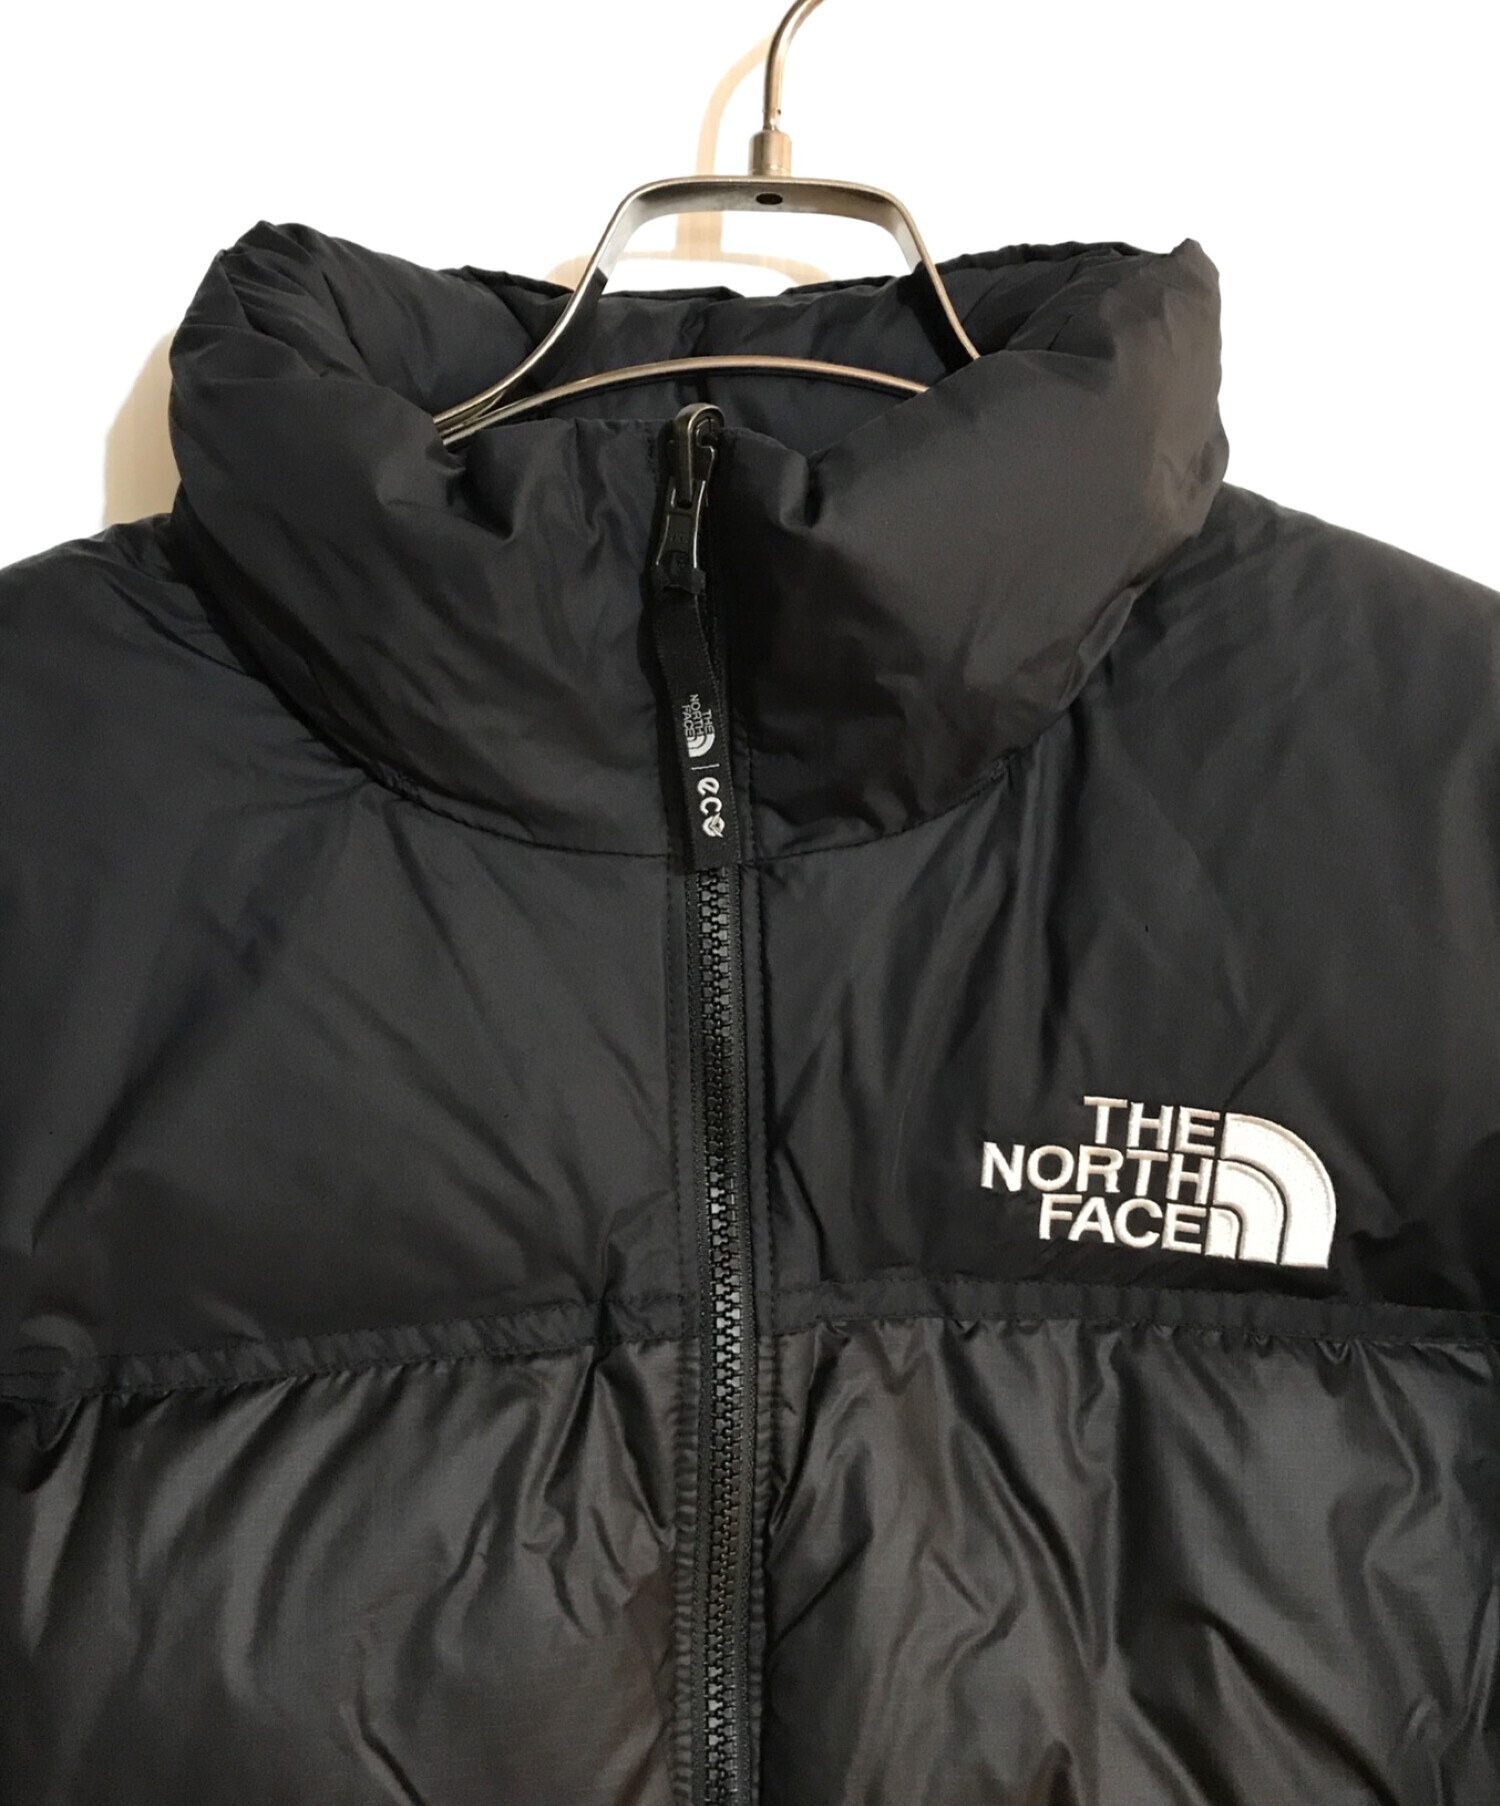 THE NORTH FACE (ザ ノース フェイス) 1996 ECO NUPTSE JACKET/1996エコヌプシジャケット ブラック  サイズ:SIZE M